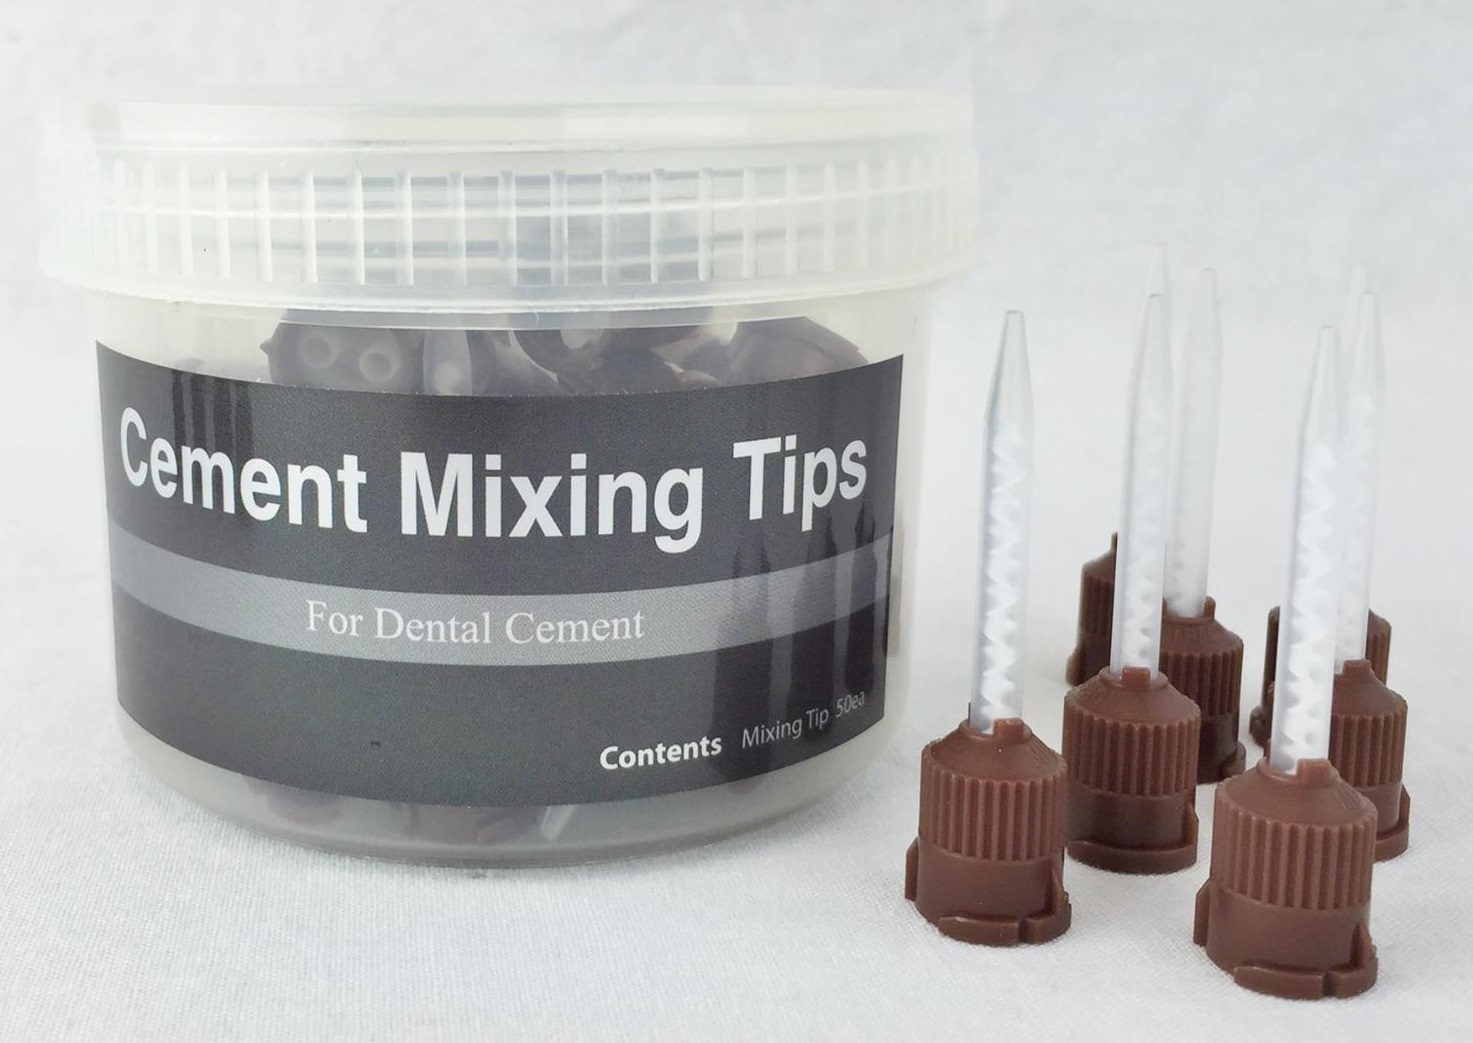 Смесительные наконечники Cement Mixing Tips коричневые маленькие для EsTemp цемент - 50 шт.